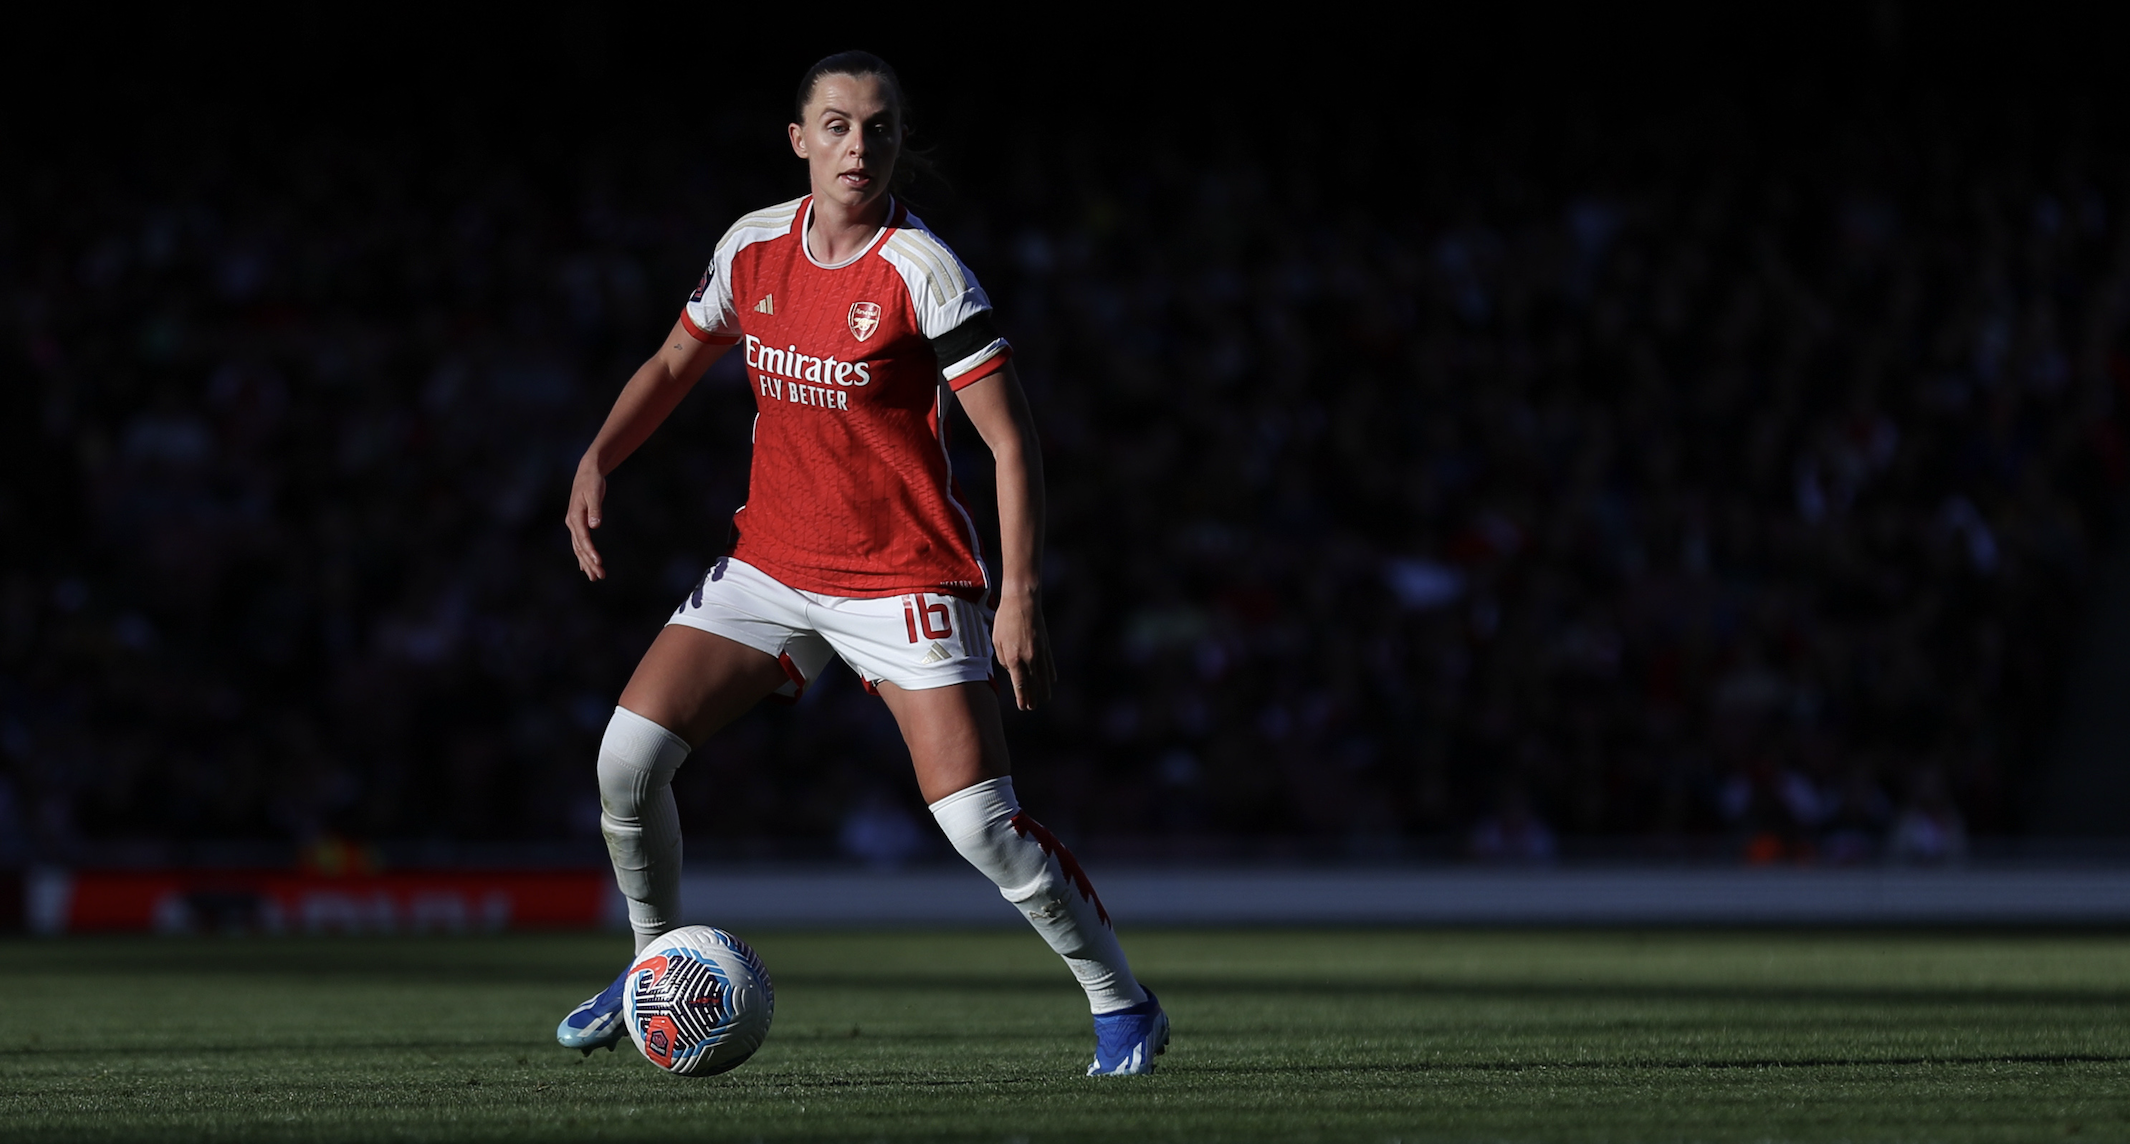 Arsenal right-back Noelle Maritz joins Aston Villa Women